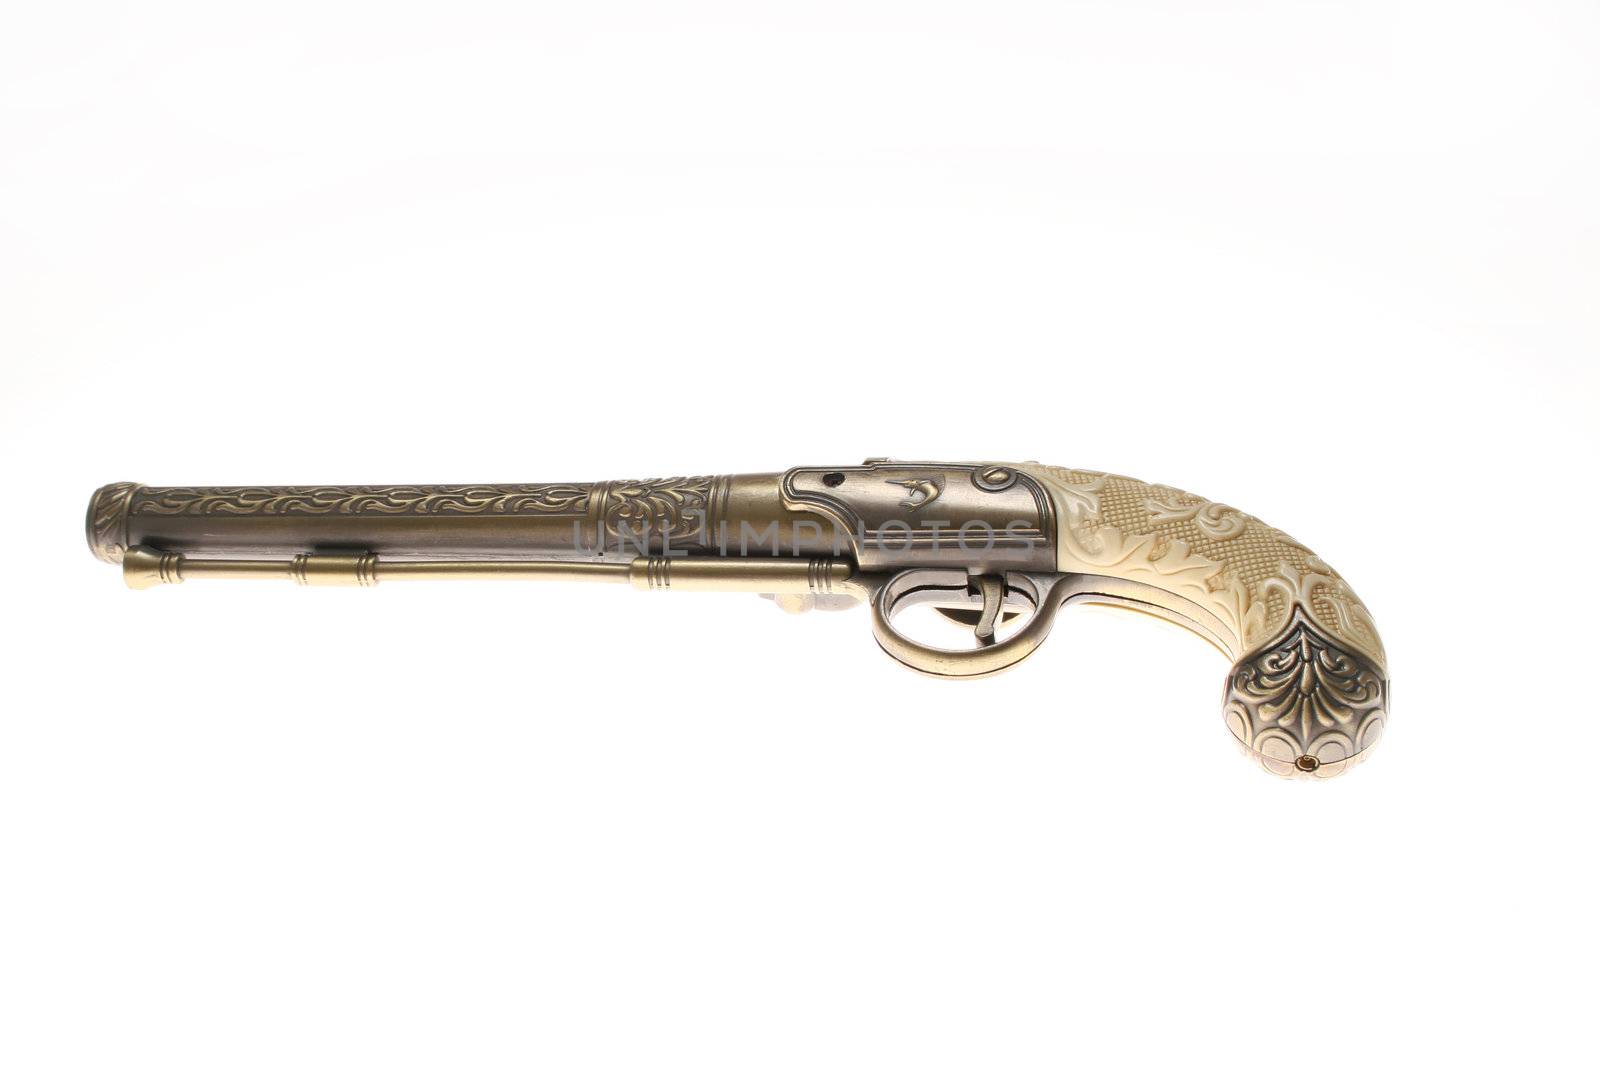 Antique gun, isolated on white by haiderazim